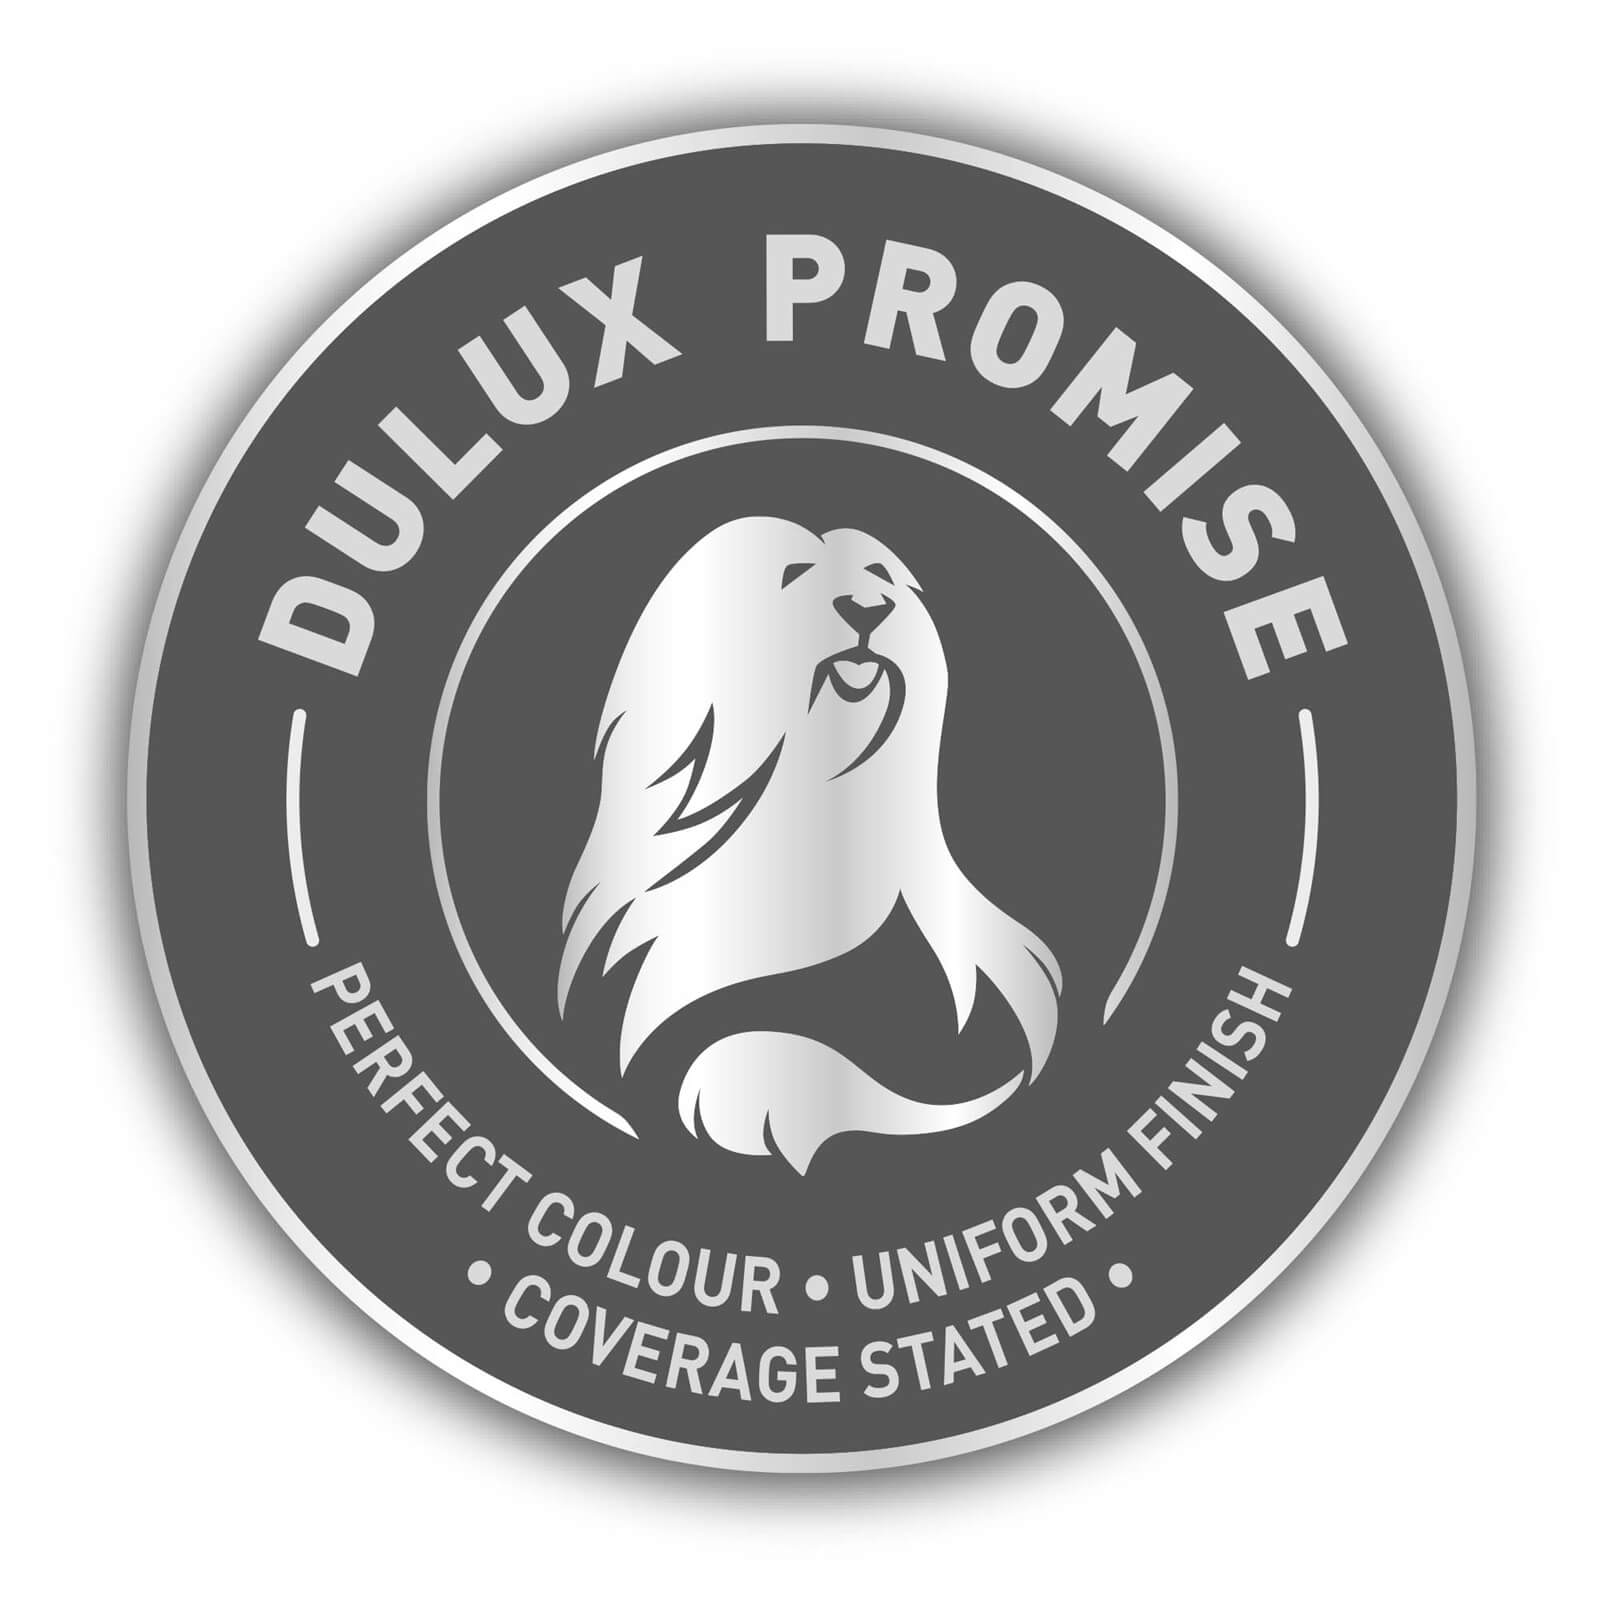 Dulux Silk Emulsion Paint Just Walnut - 2.5L